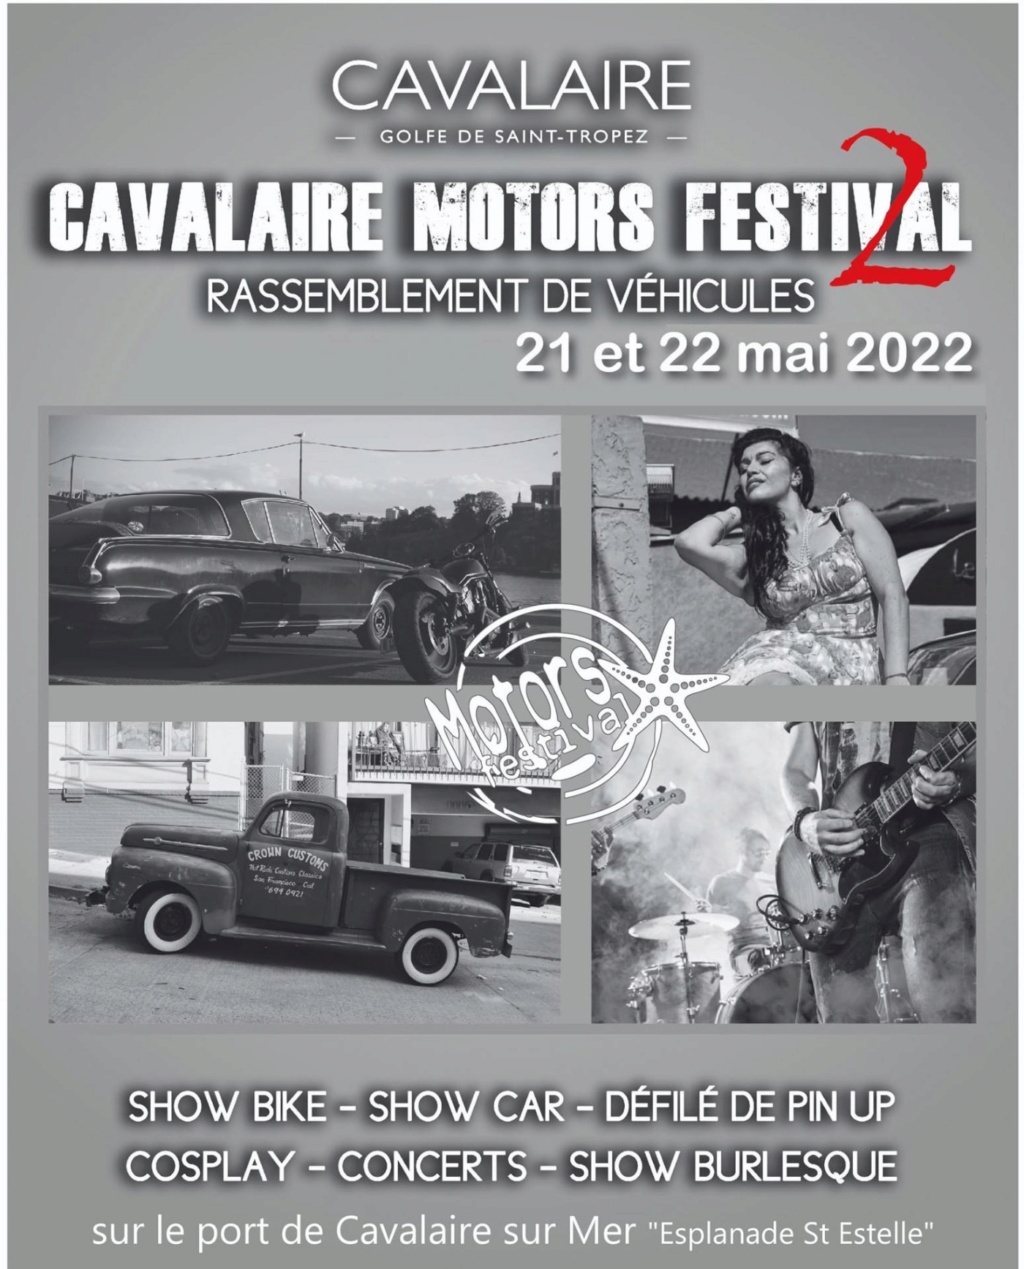 MANIFESTATION - Cavalaire Motors Festival - 21 & 22 Mai 2022 Cavalaire - Golfe de St Tropez  6217af11